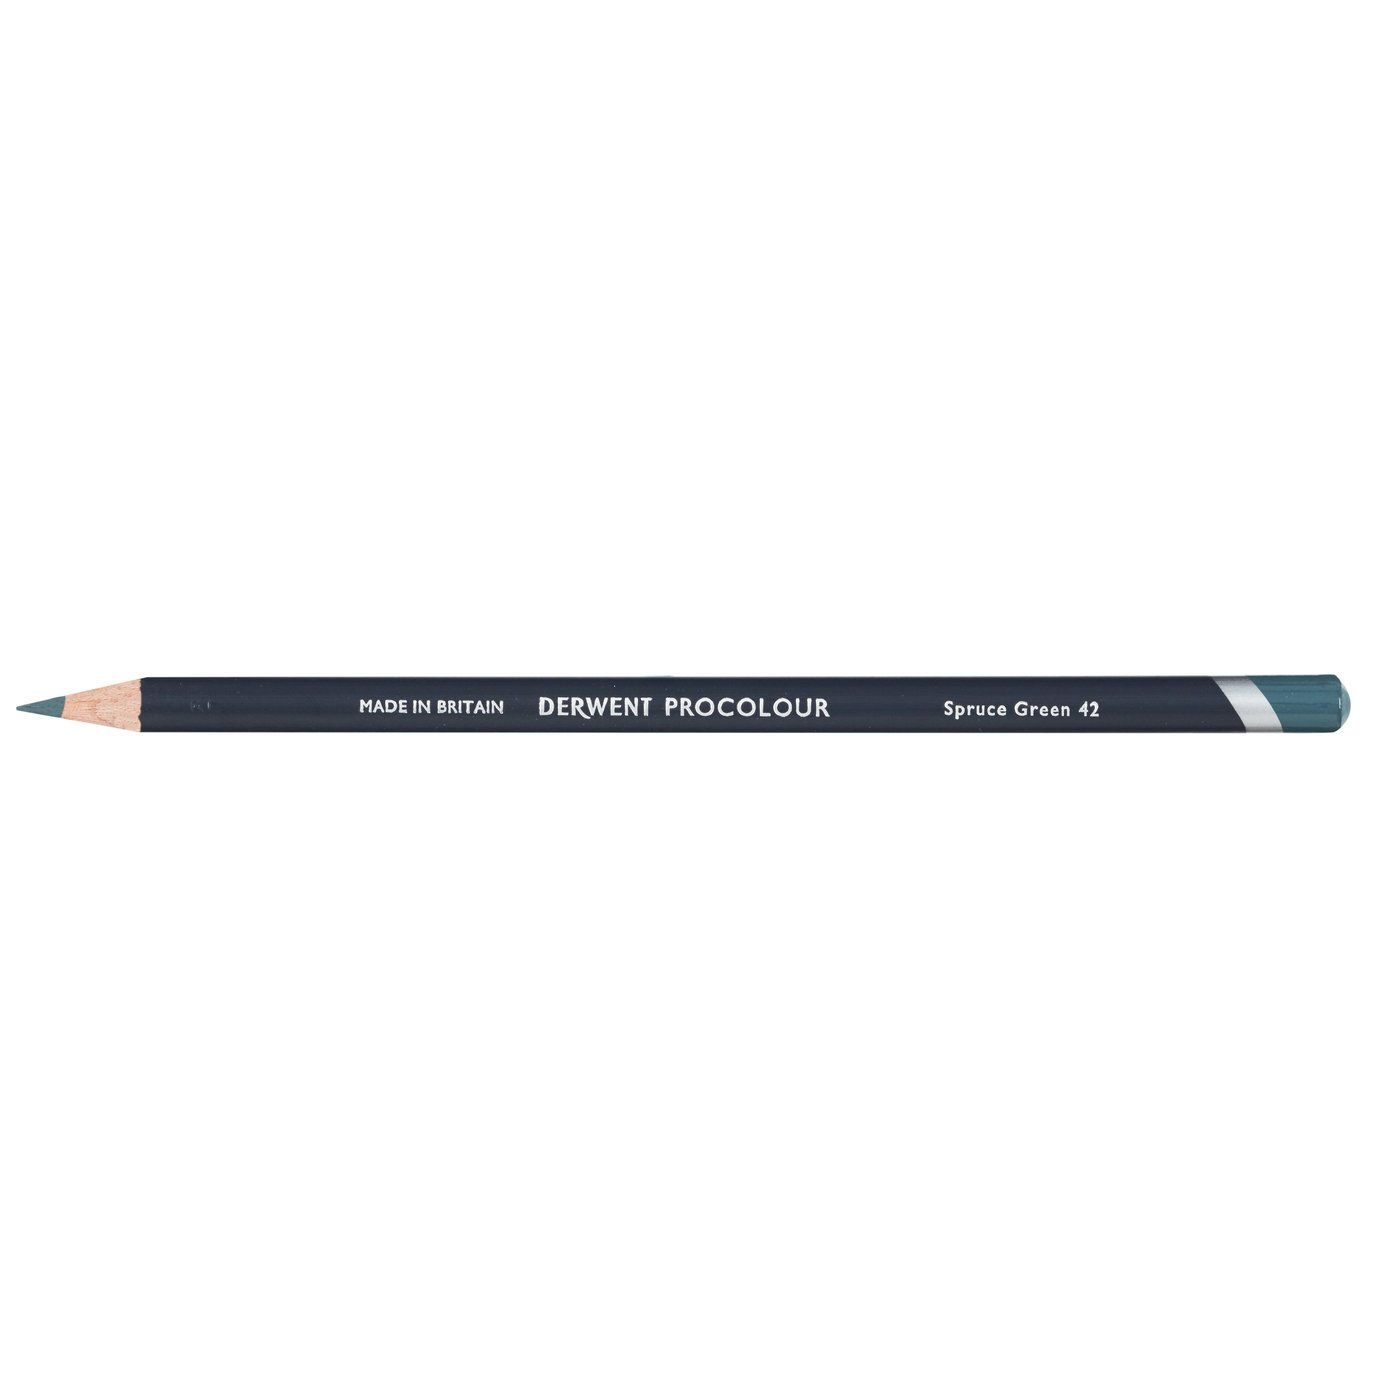 Derwent Procolour Pencil - 42 Spruce Green